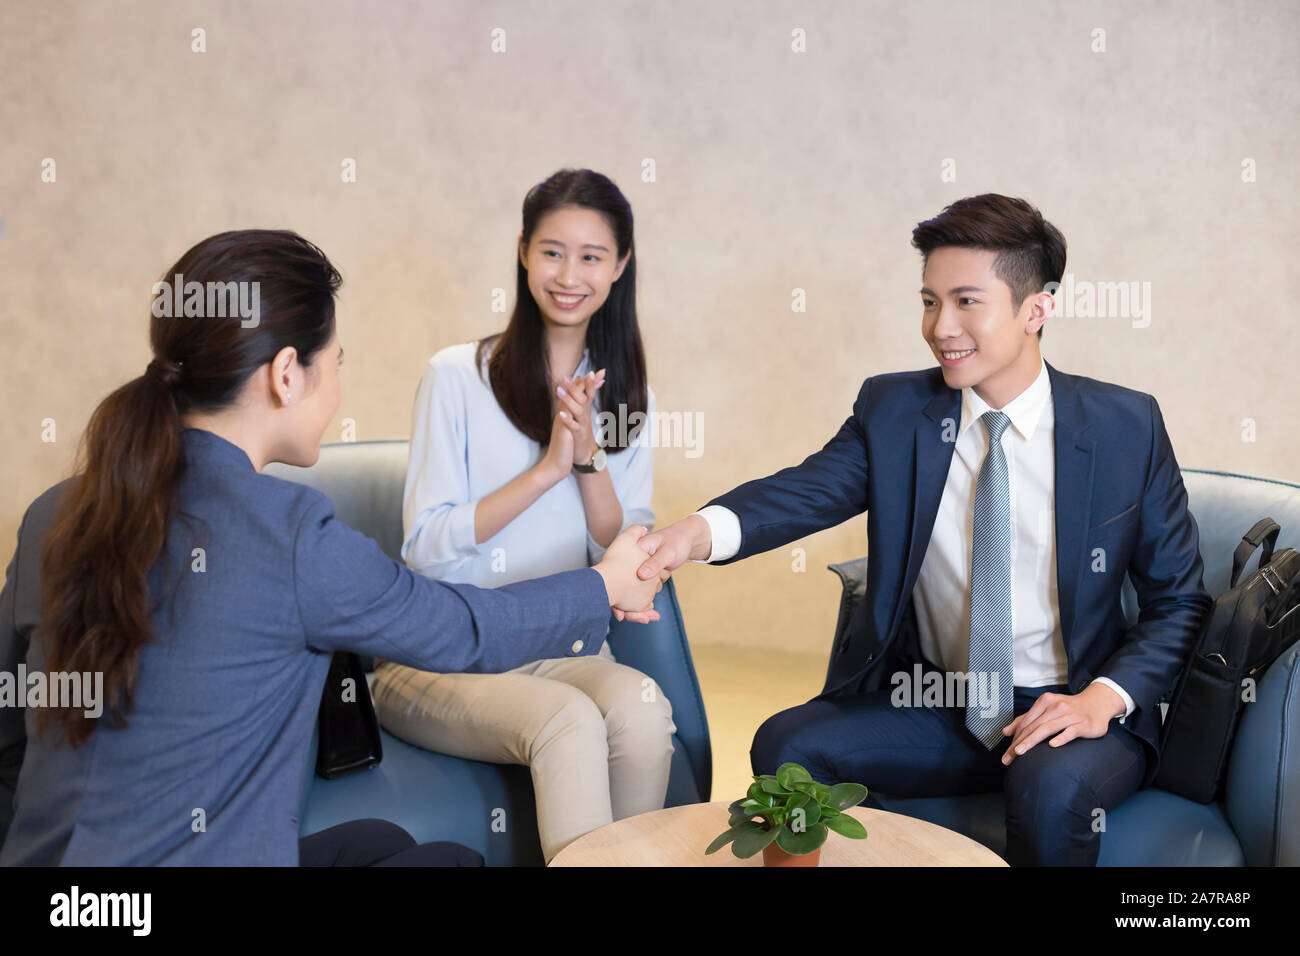 Foto von zwei junge männliche und weibliche Unternehmer die Hände schütteln bei einem Treffen mit einem anderen Klatschen und lächelnd Stockfoto